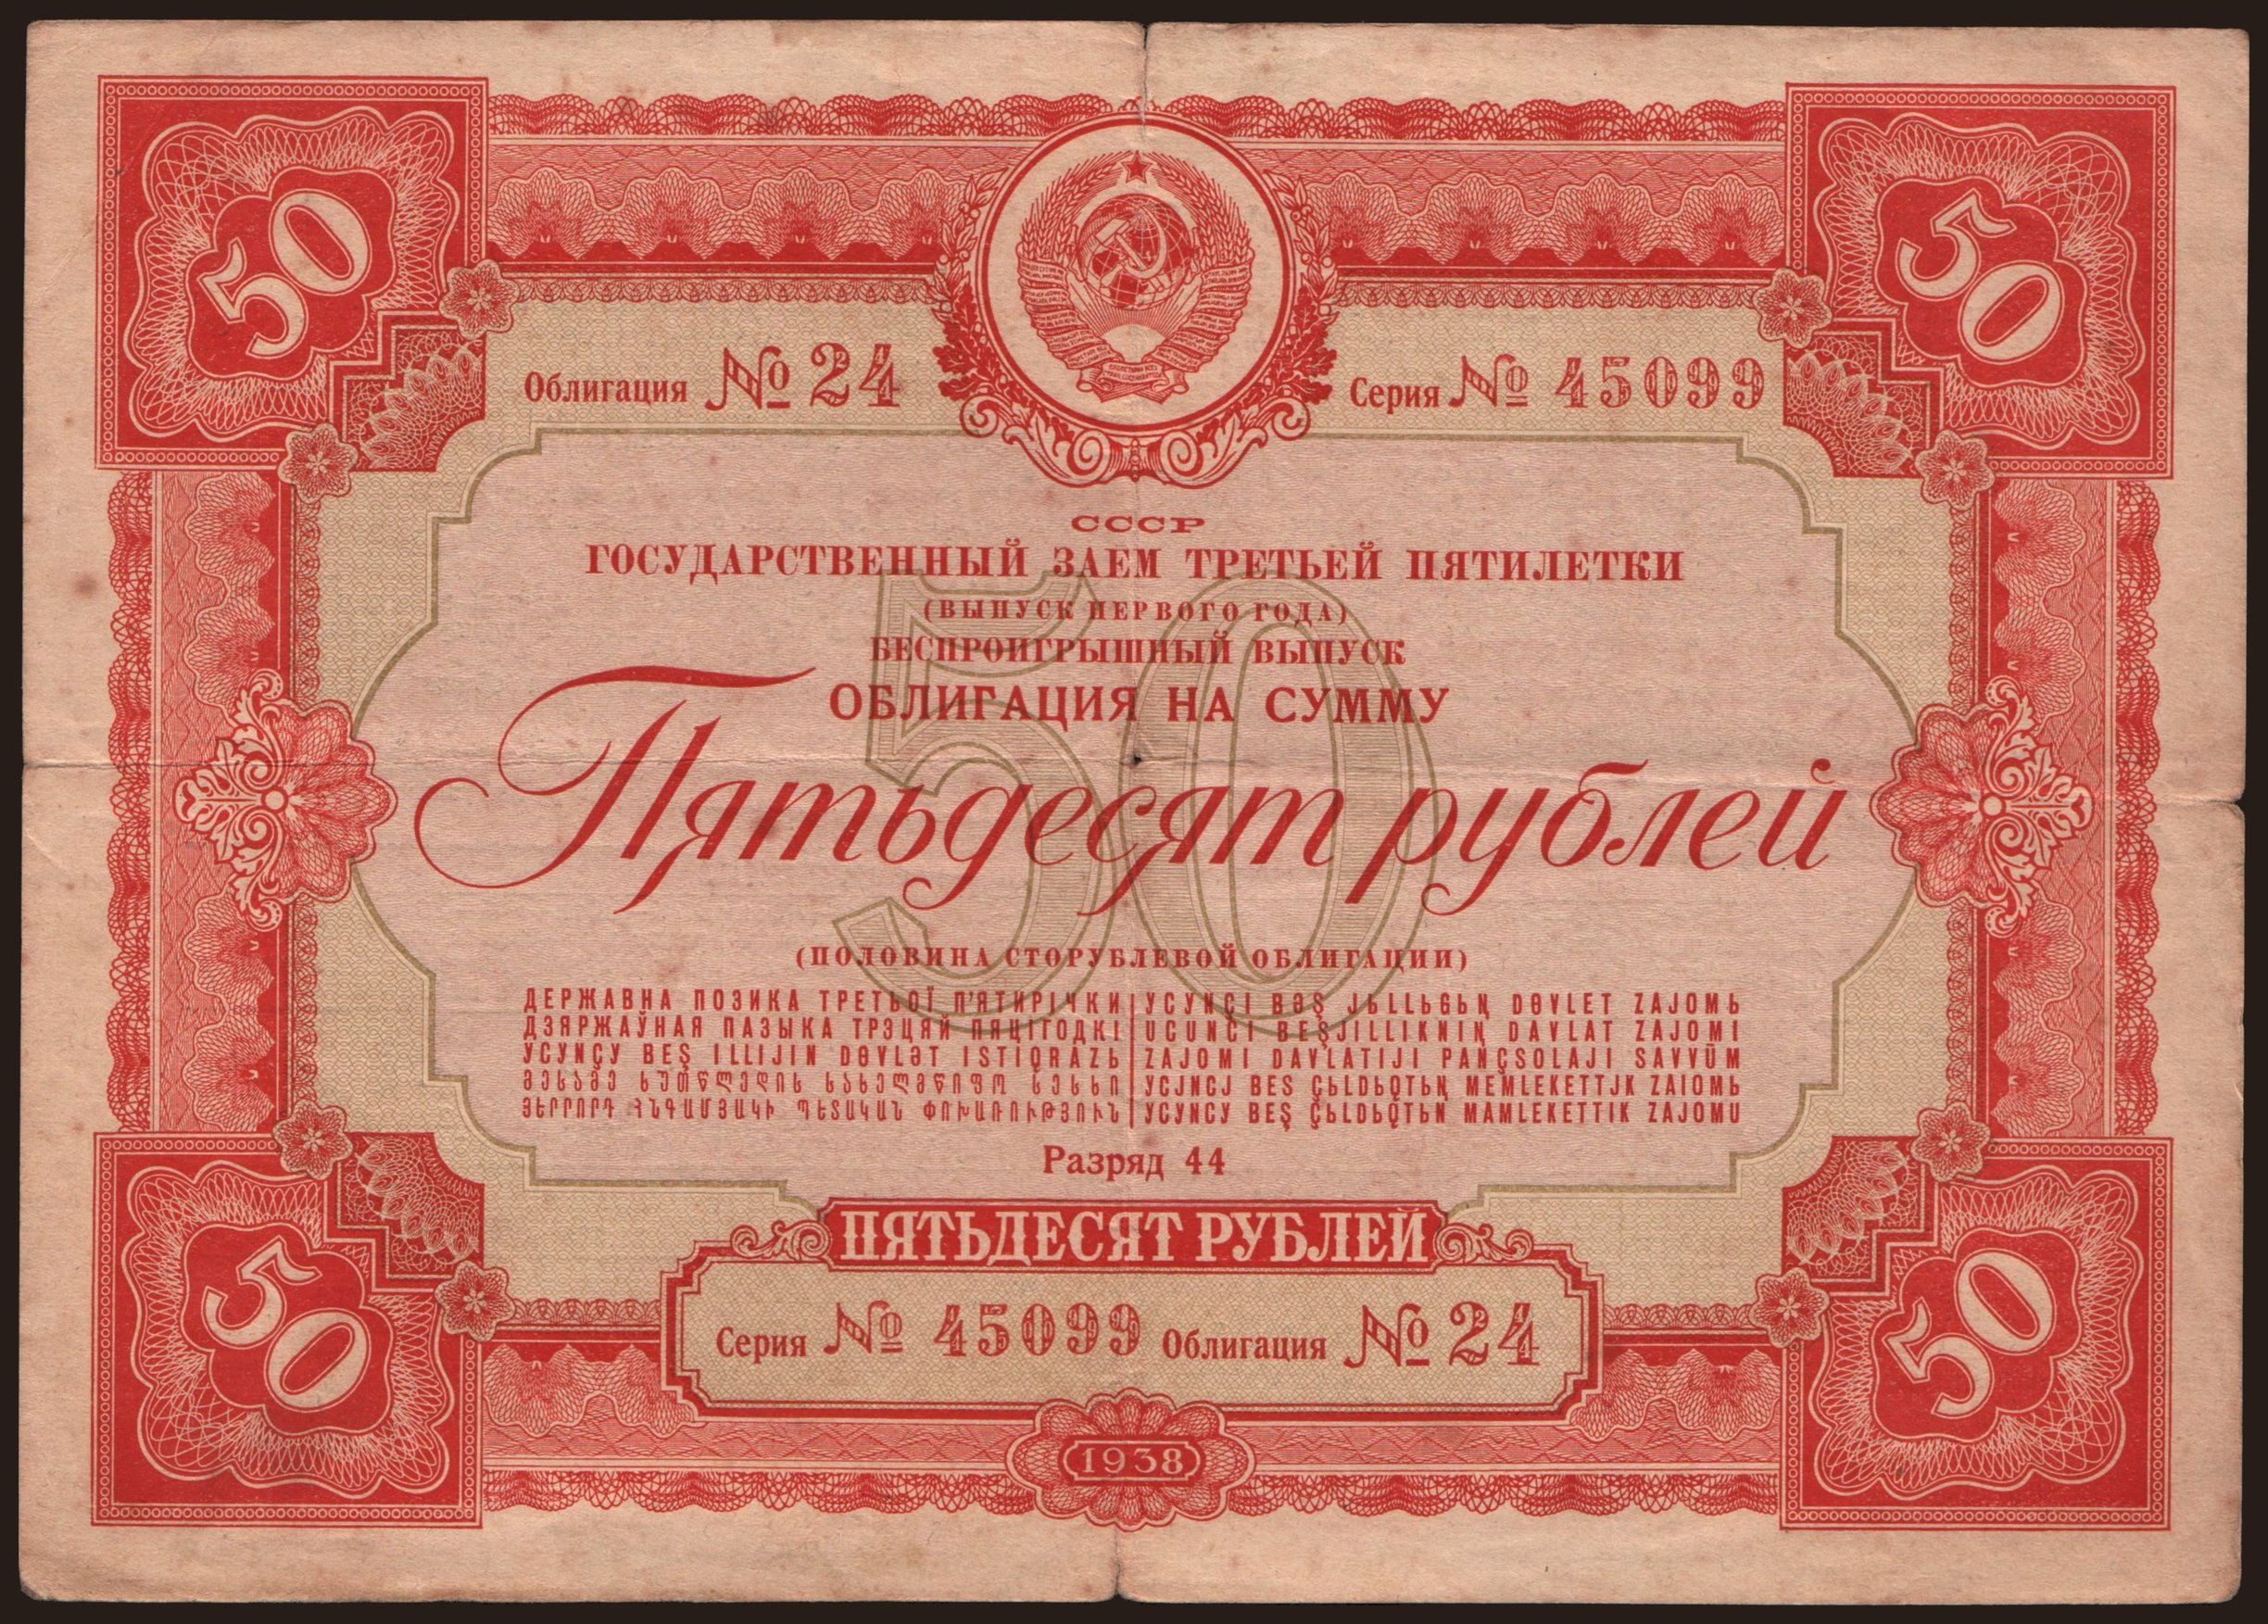 Gosudarstvennyj zaem, 50 rubel, 1938